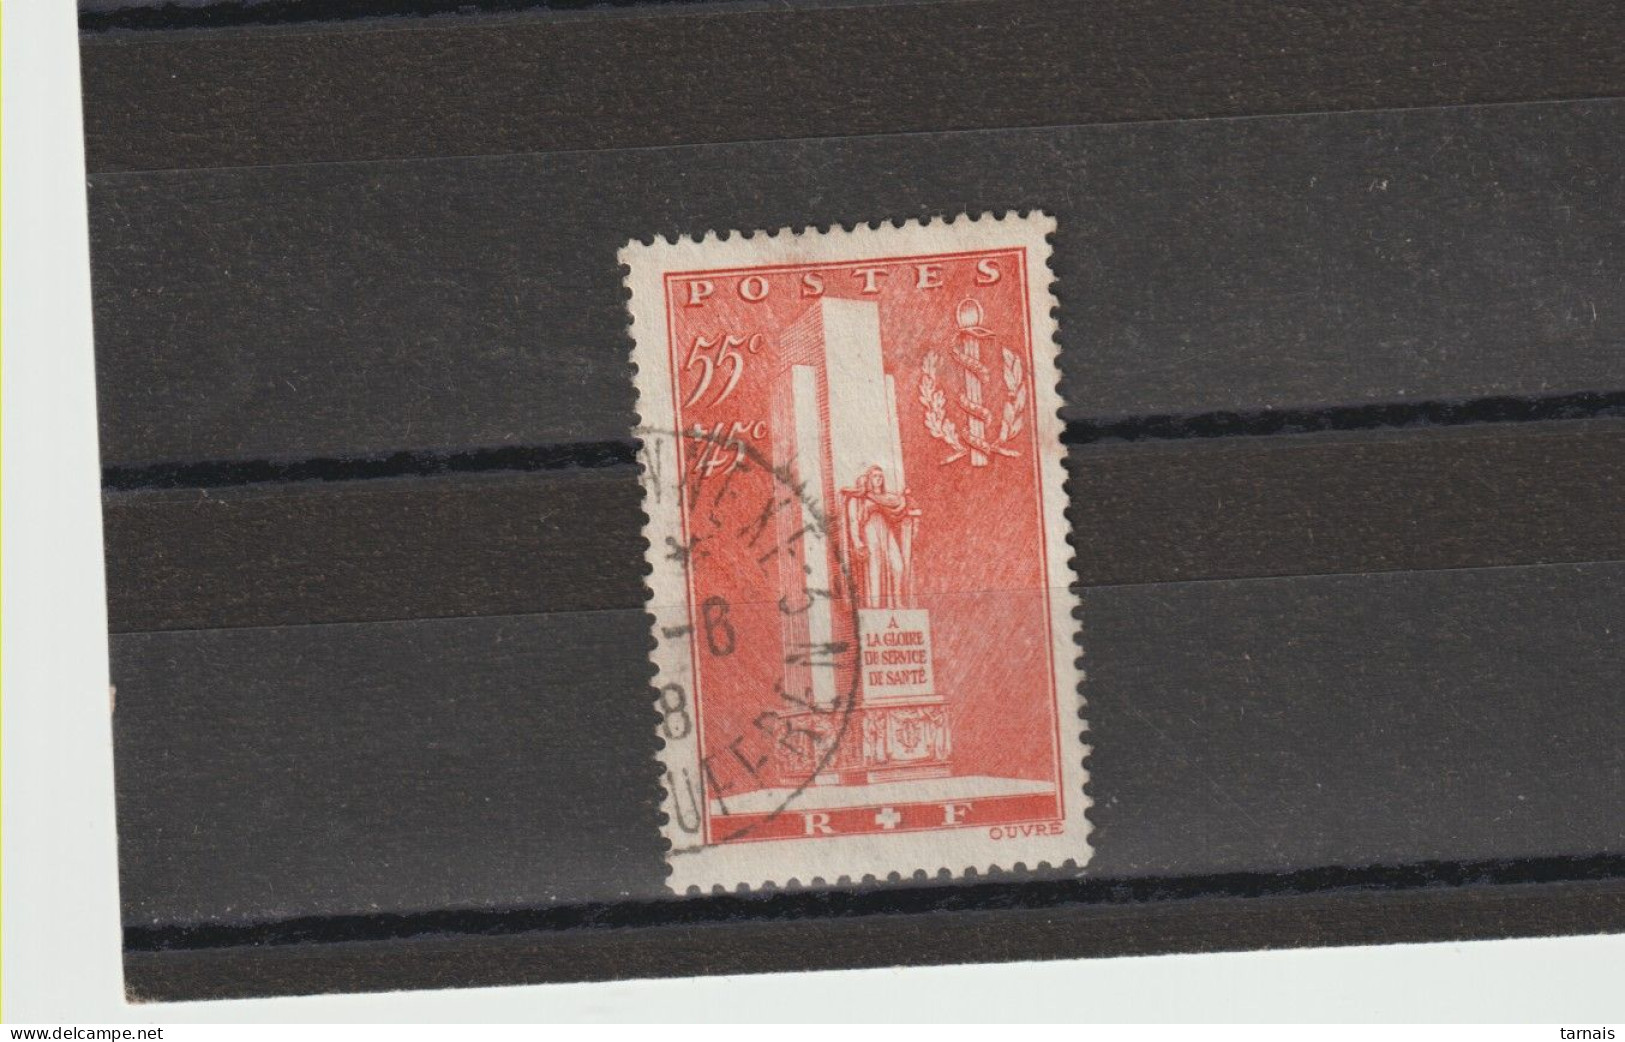 1938 N°395 Service De Santé Militaire Oblitéré - Used Stamps